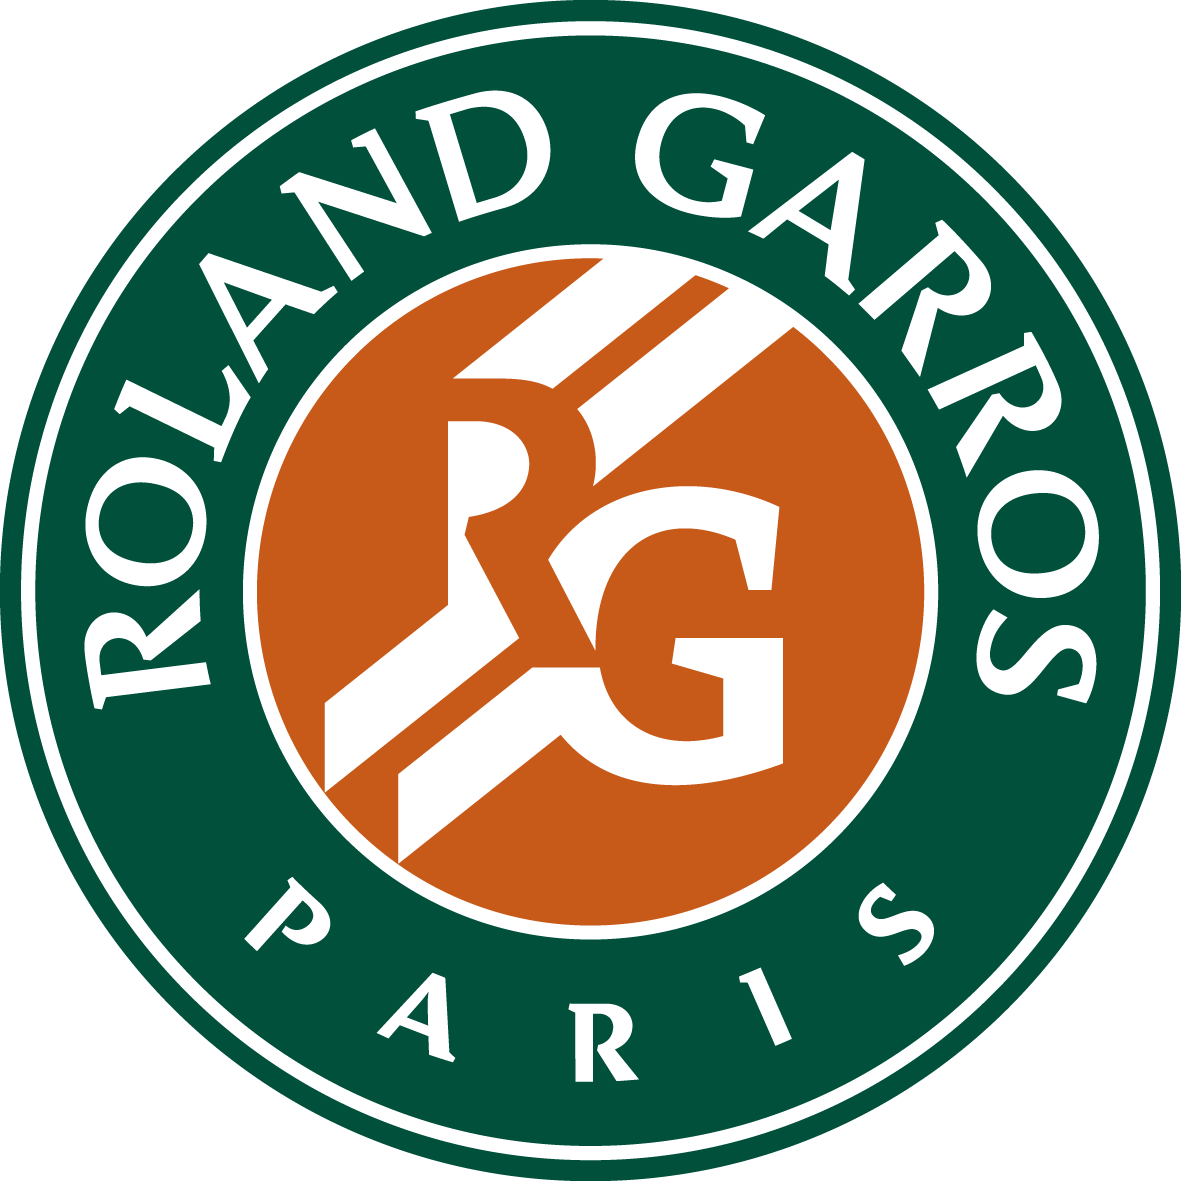 Roland Garros The 21 Roland Garros Tournament Official Site